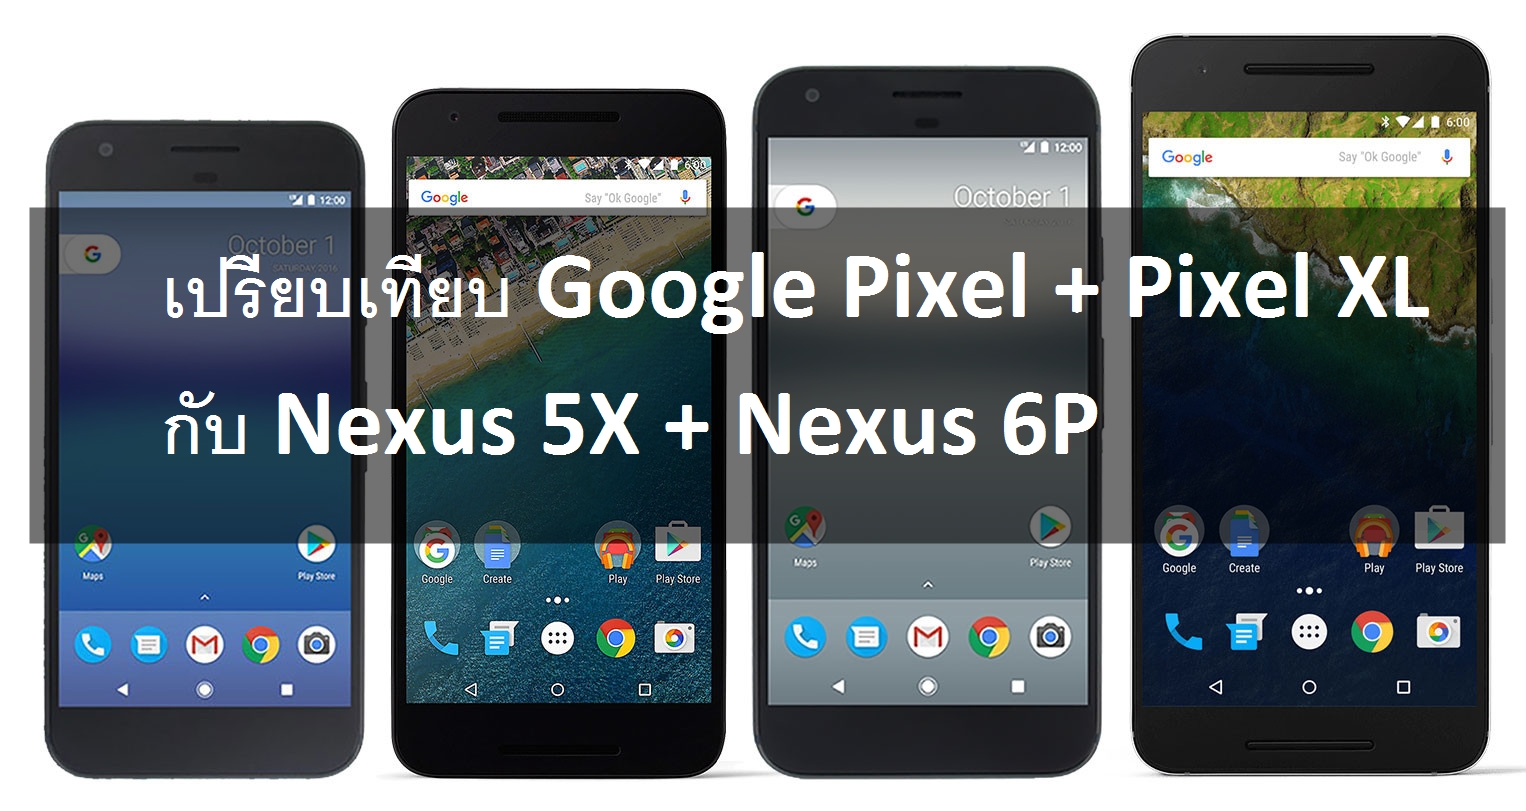 pixels nexus spec | Nexus 6P | เปรียบเทียบ Google Pixel + Pixel XL กับ Nexus 5X + Nexus 6P ทั้งสเปคและเทียบหน้าจอชัด ๆ